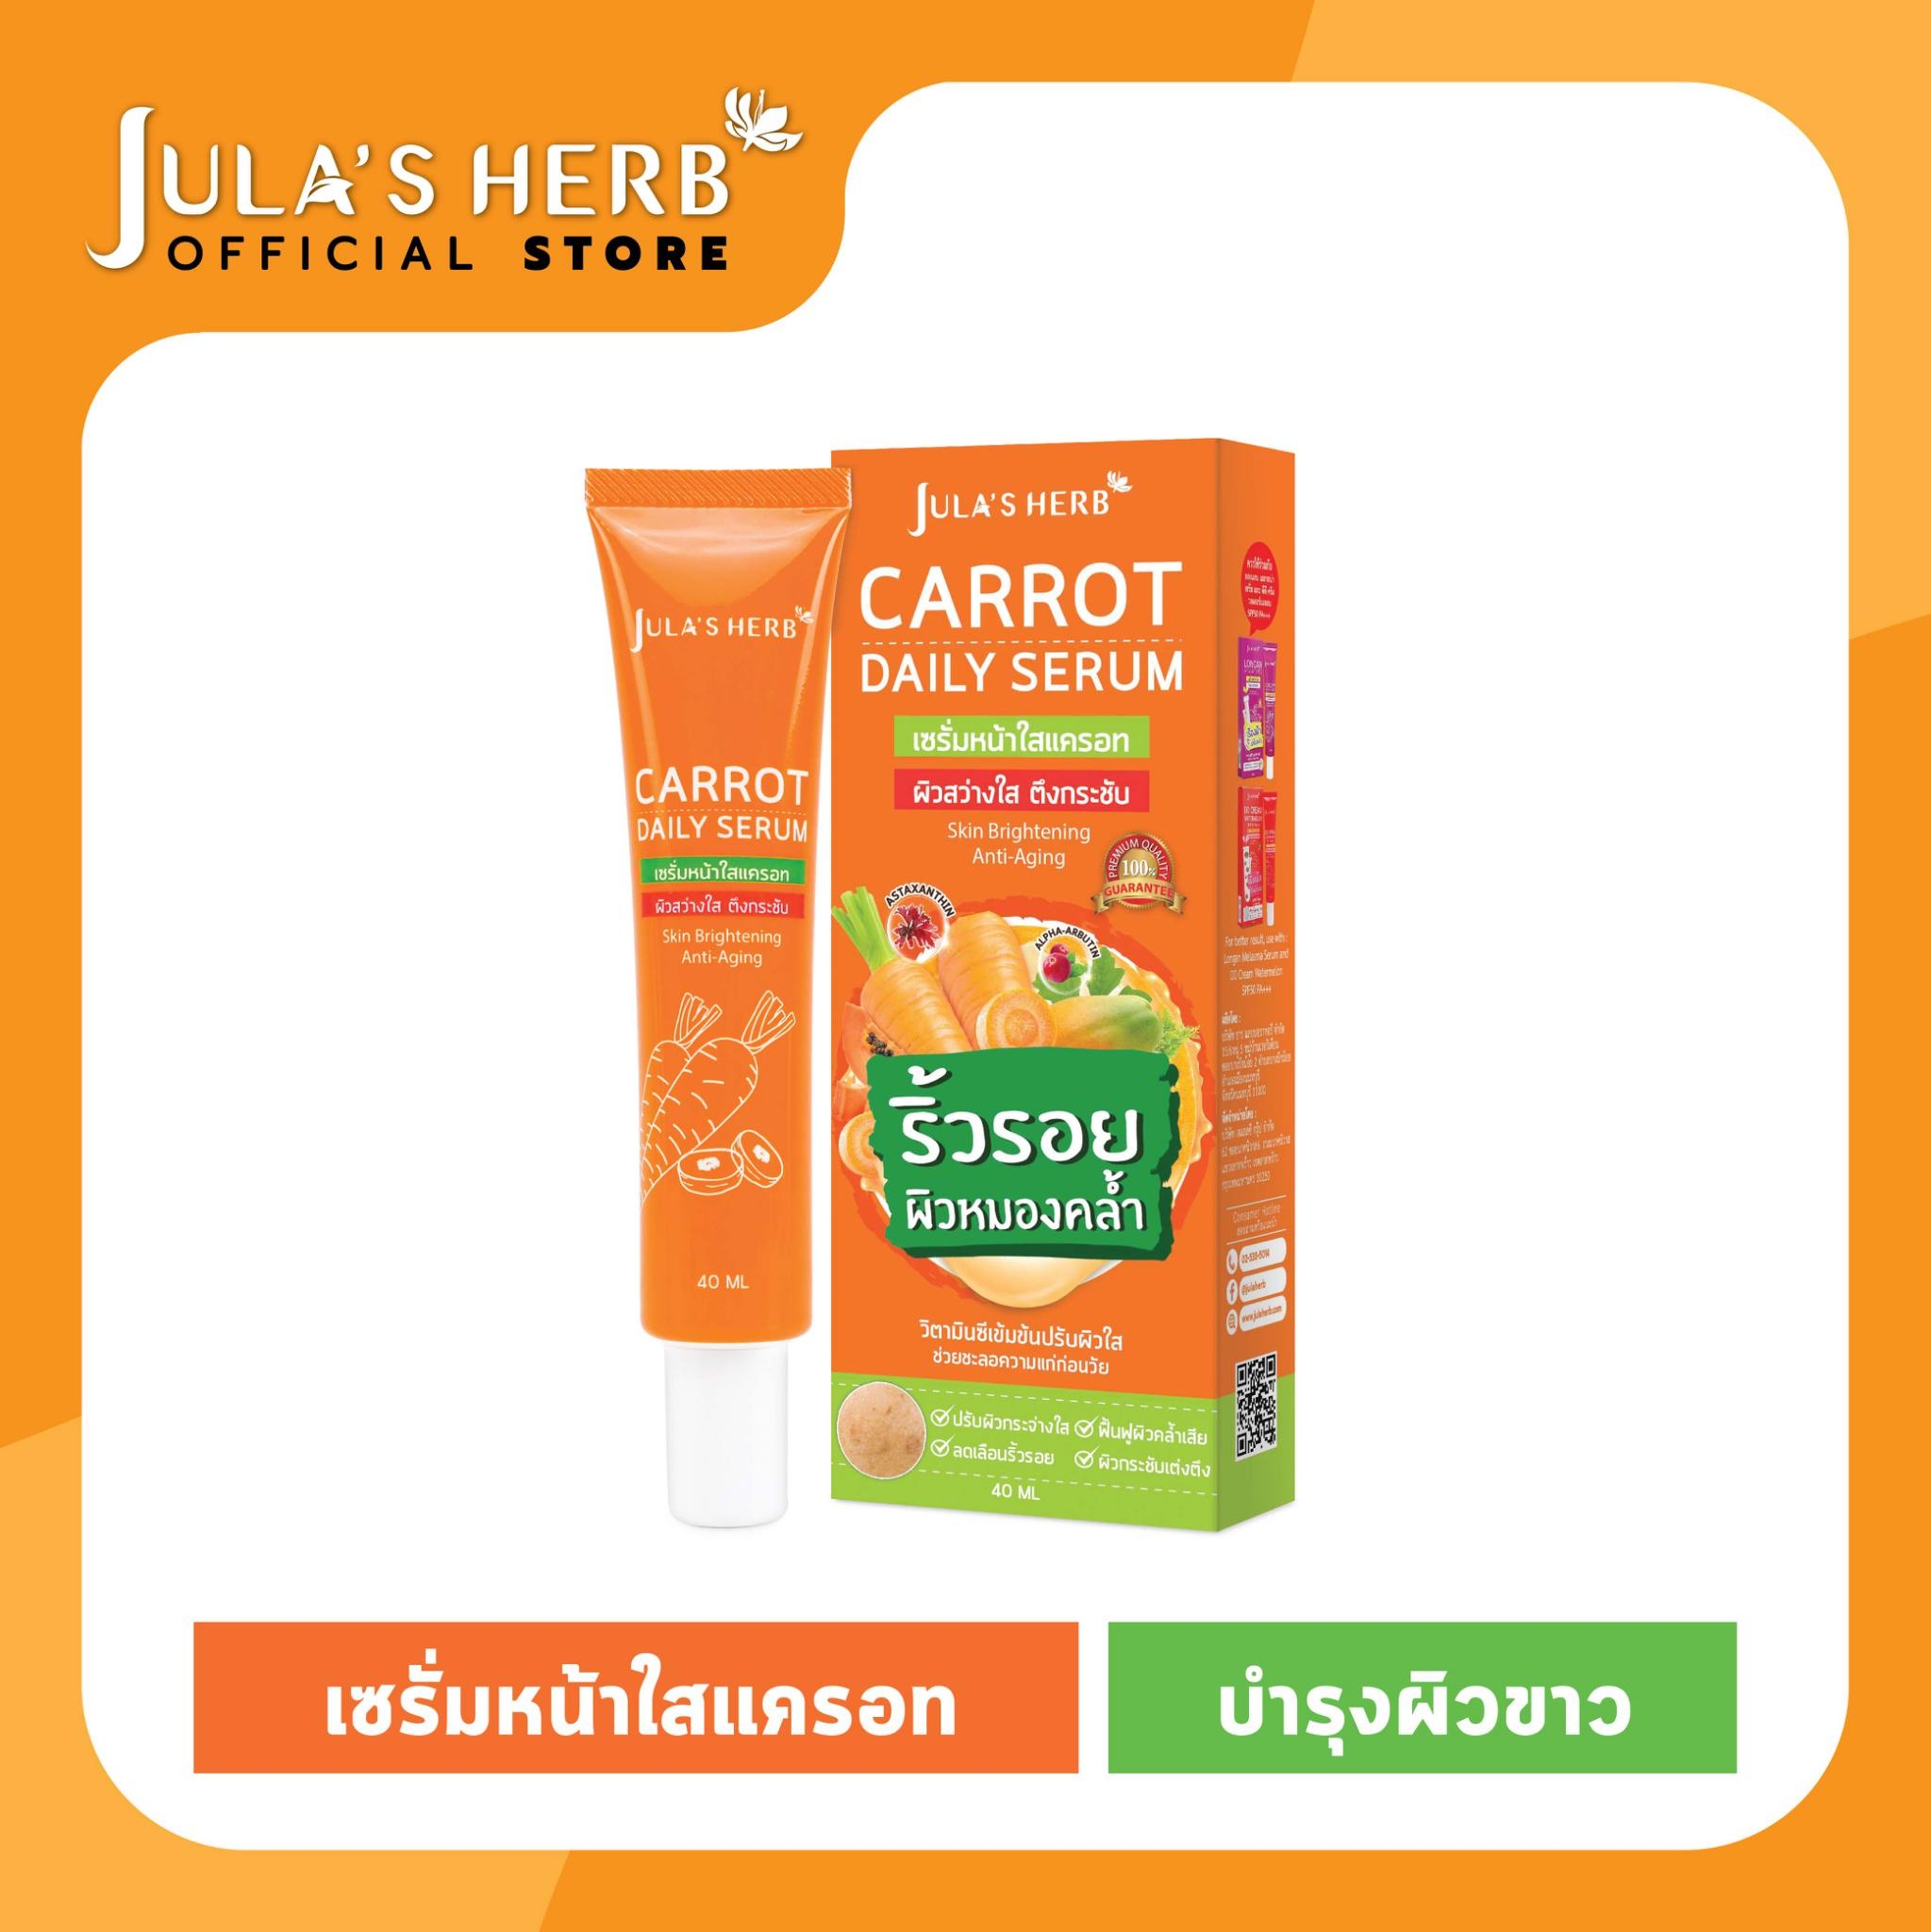 แนะนำ ใหม่! Jula's Herb Carrot Daily Serum จุฬาเฮิร์บ เซรั่มหน้าใสแครอท 40 ml.